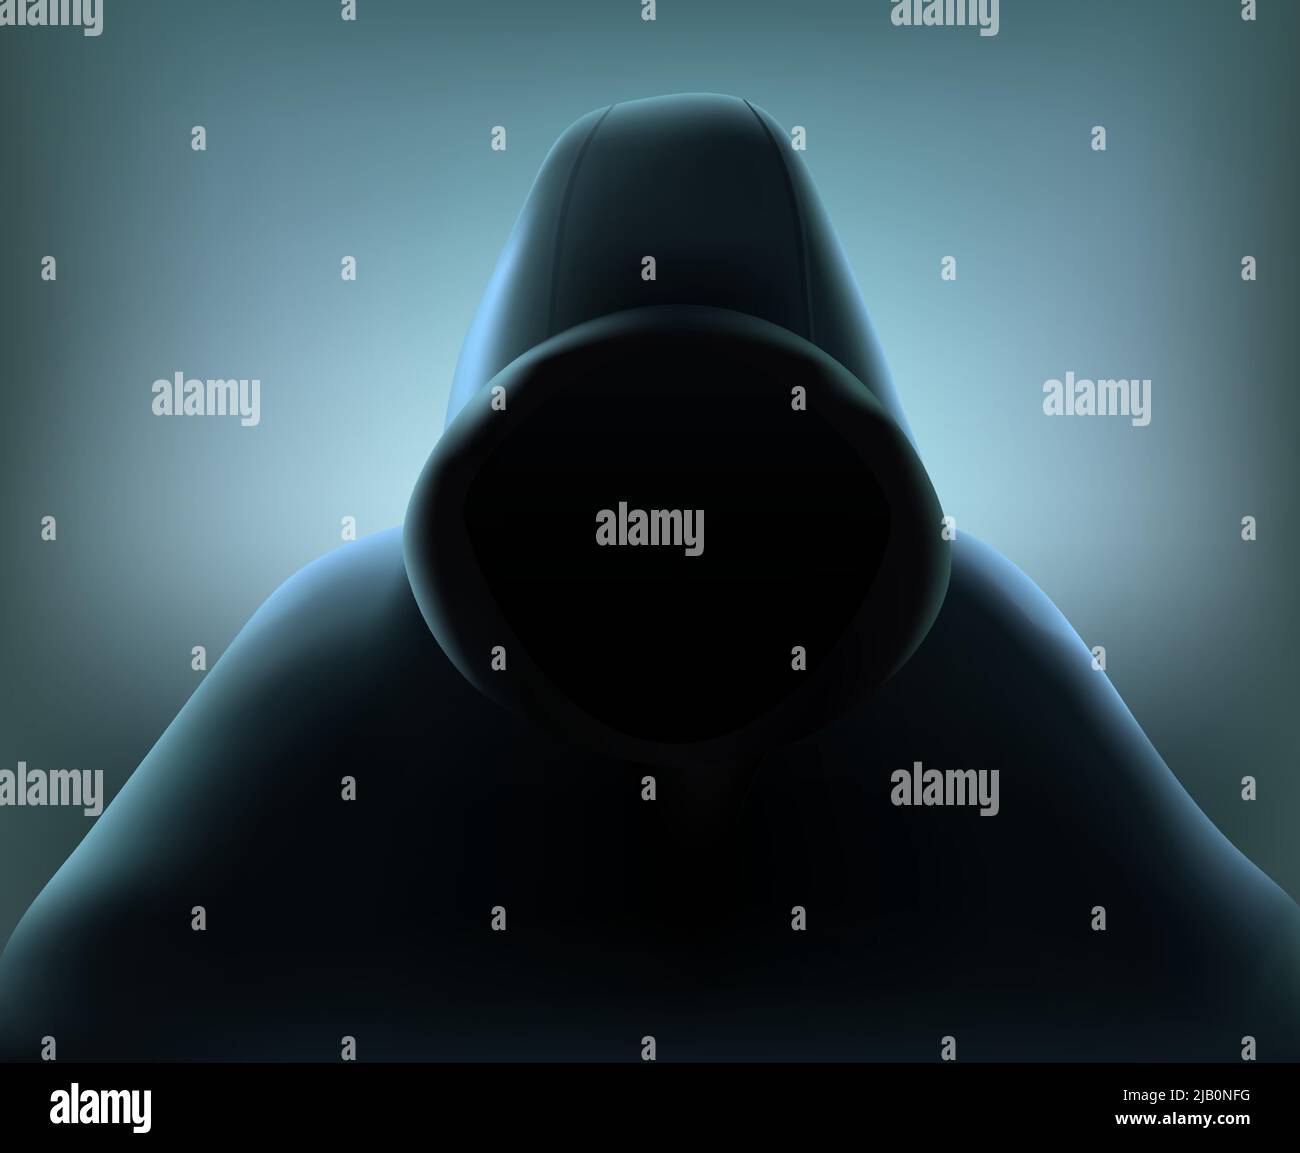 Farbige Hacker realistische Zusammensetzung mit Figur des Mannes der Frau in schwarz lose Gesamtvektor Illustration Stock Vektor